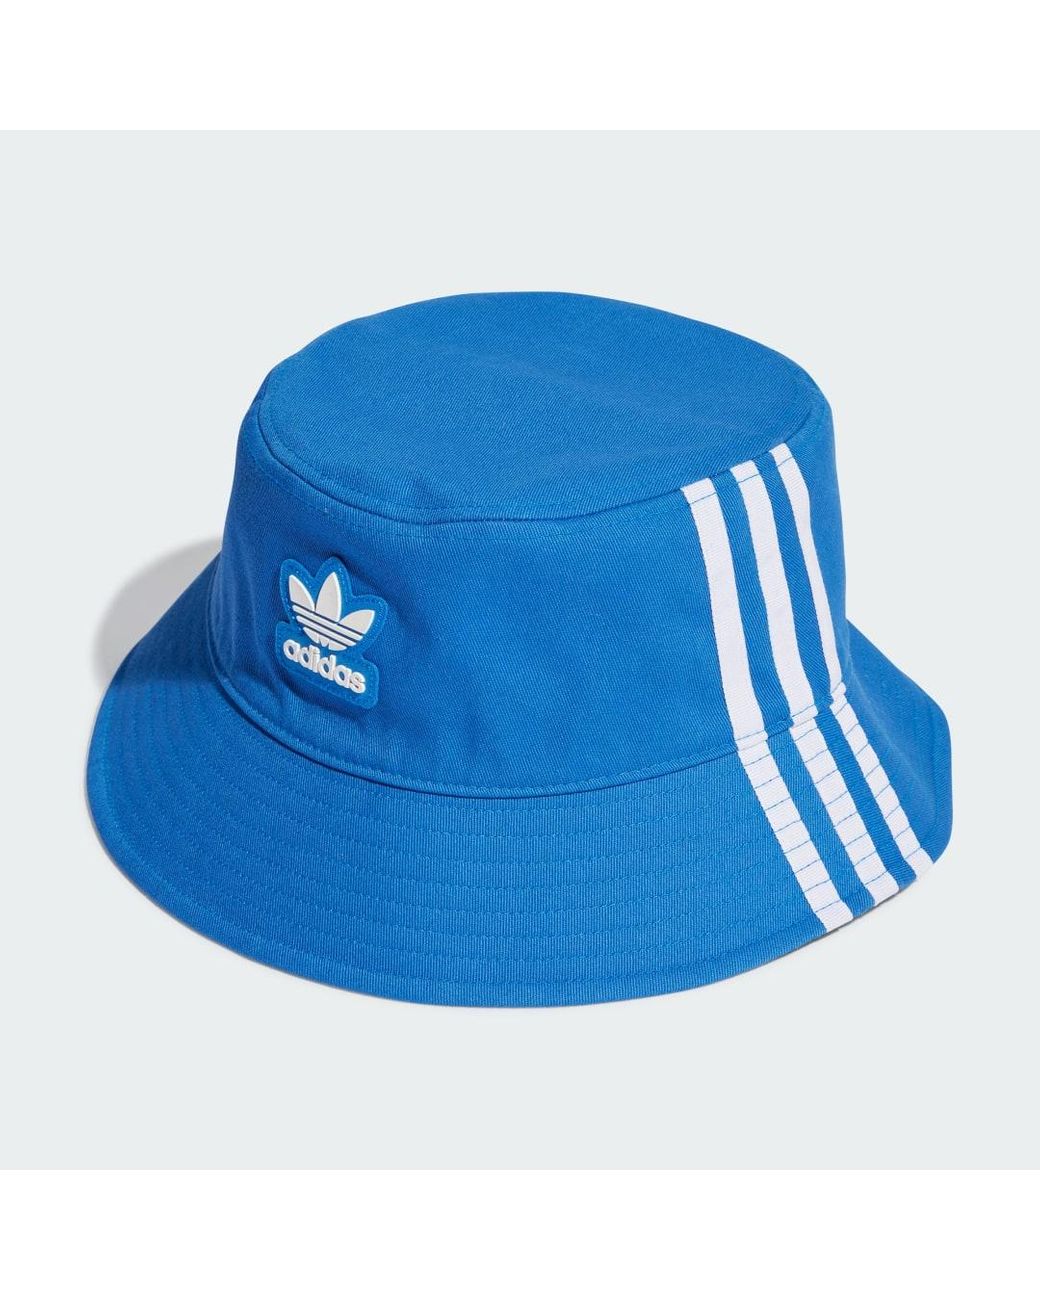 adidas Adicolor Classic Bucket Hat in Blau | Lyst CH